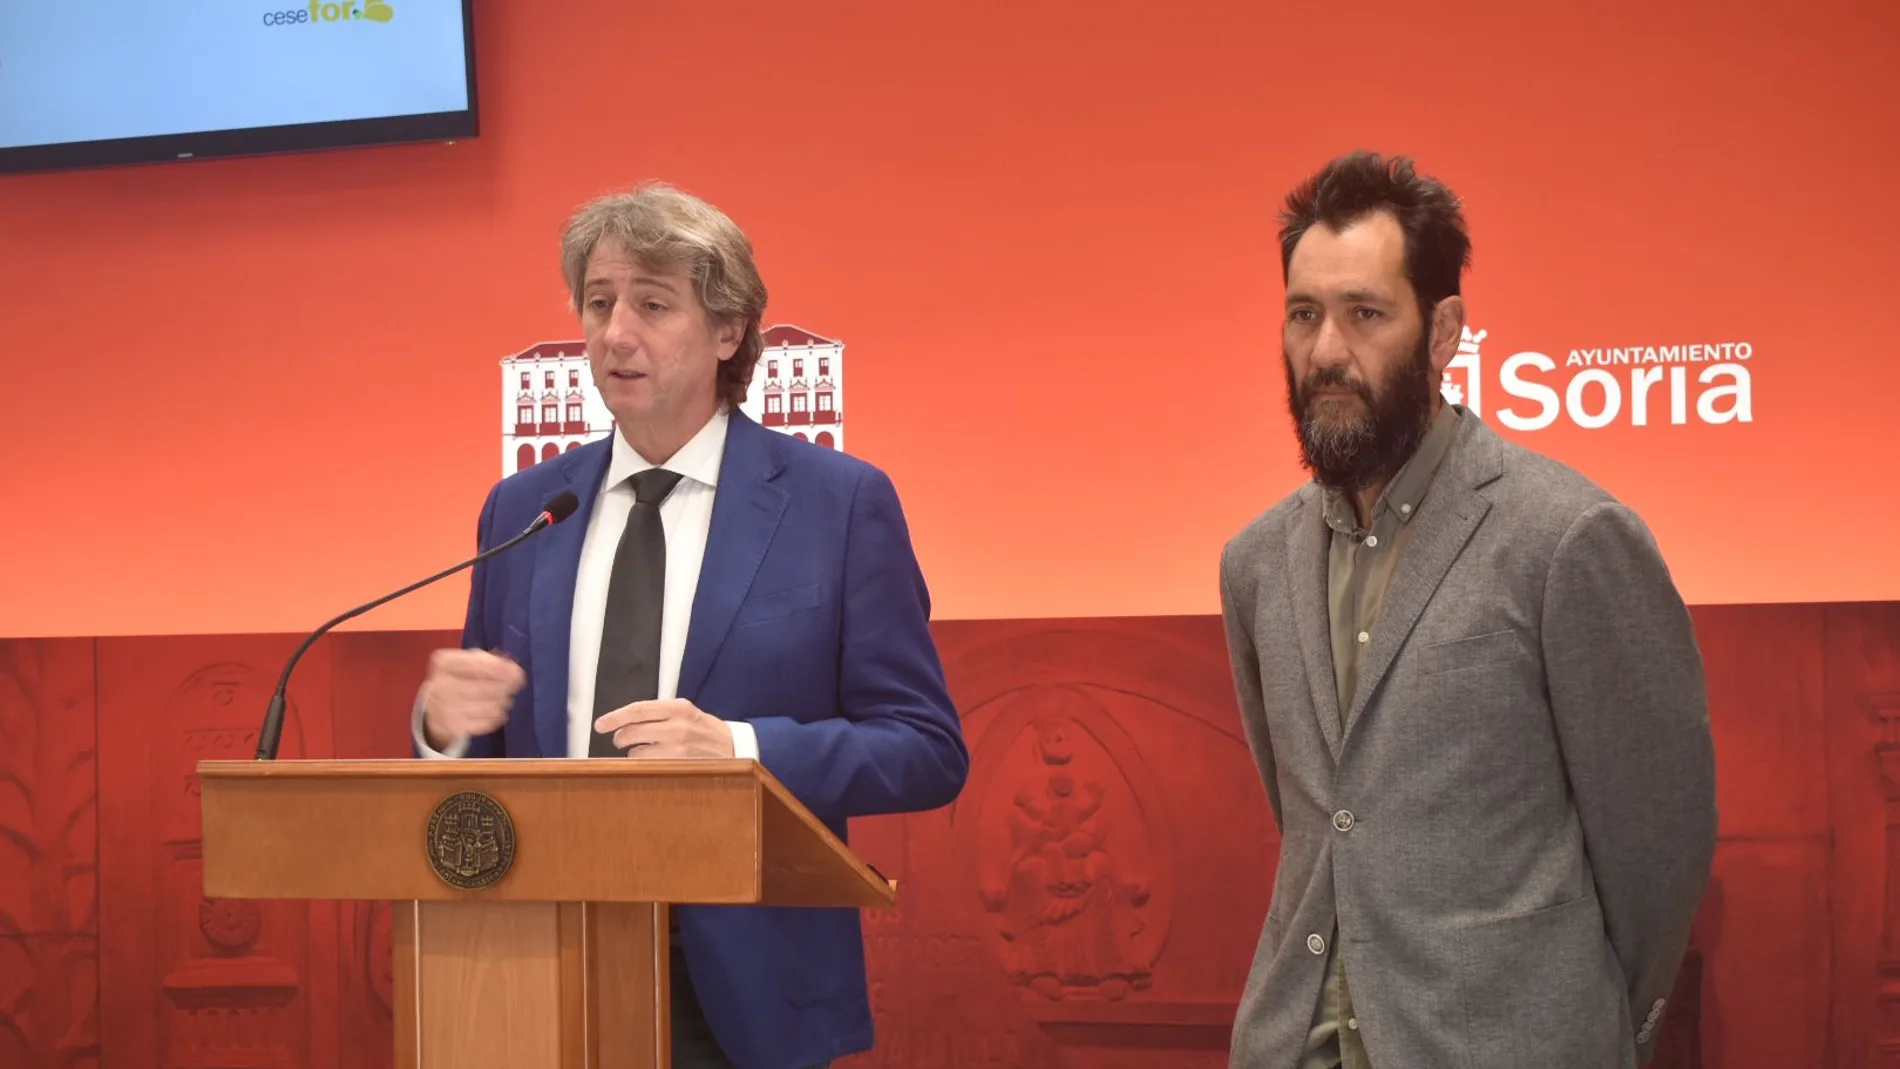 El alcalde de Soria, Carlos Martínez y el director de la Fundación Cesefor, Pablo Sabín firman convenio para crear el primer Observatorio de Datos Ambientales del país